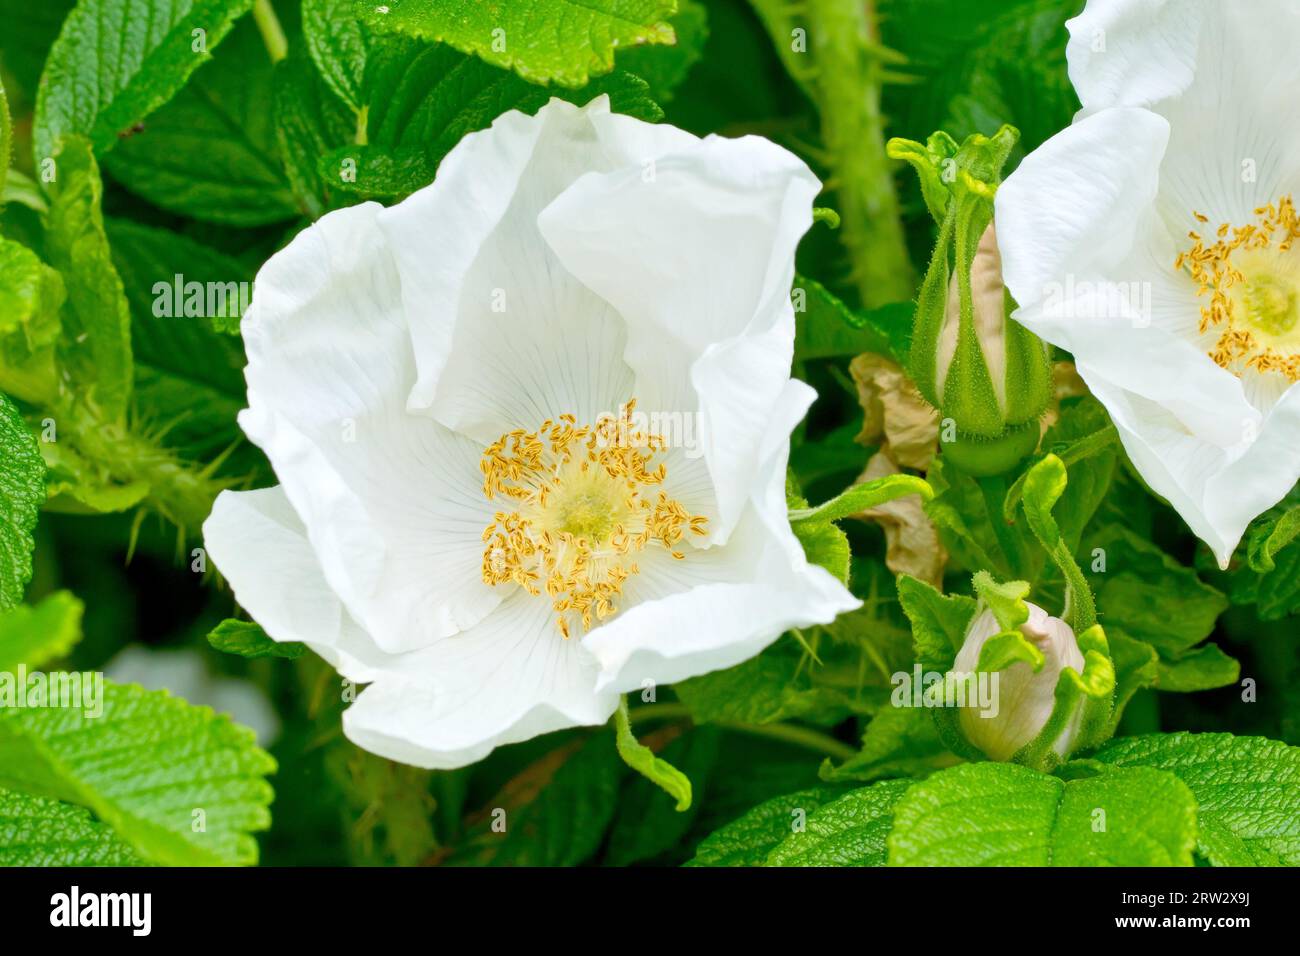 Wilde Rose oder Japanische Rose (rosa rugosa alba), Nahaufnahme mit Fokus auf eine einzelne weiße Blume des häufig gepflanzten und wilden Strauchs. Stockfoto